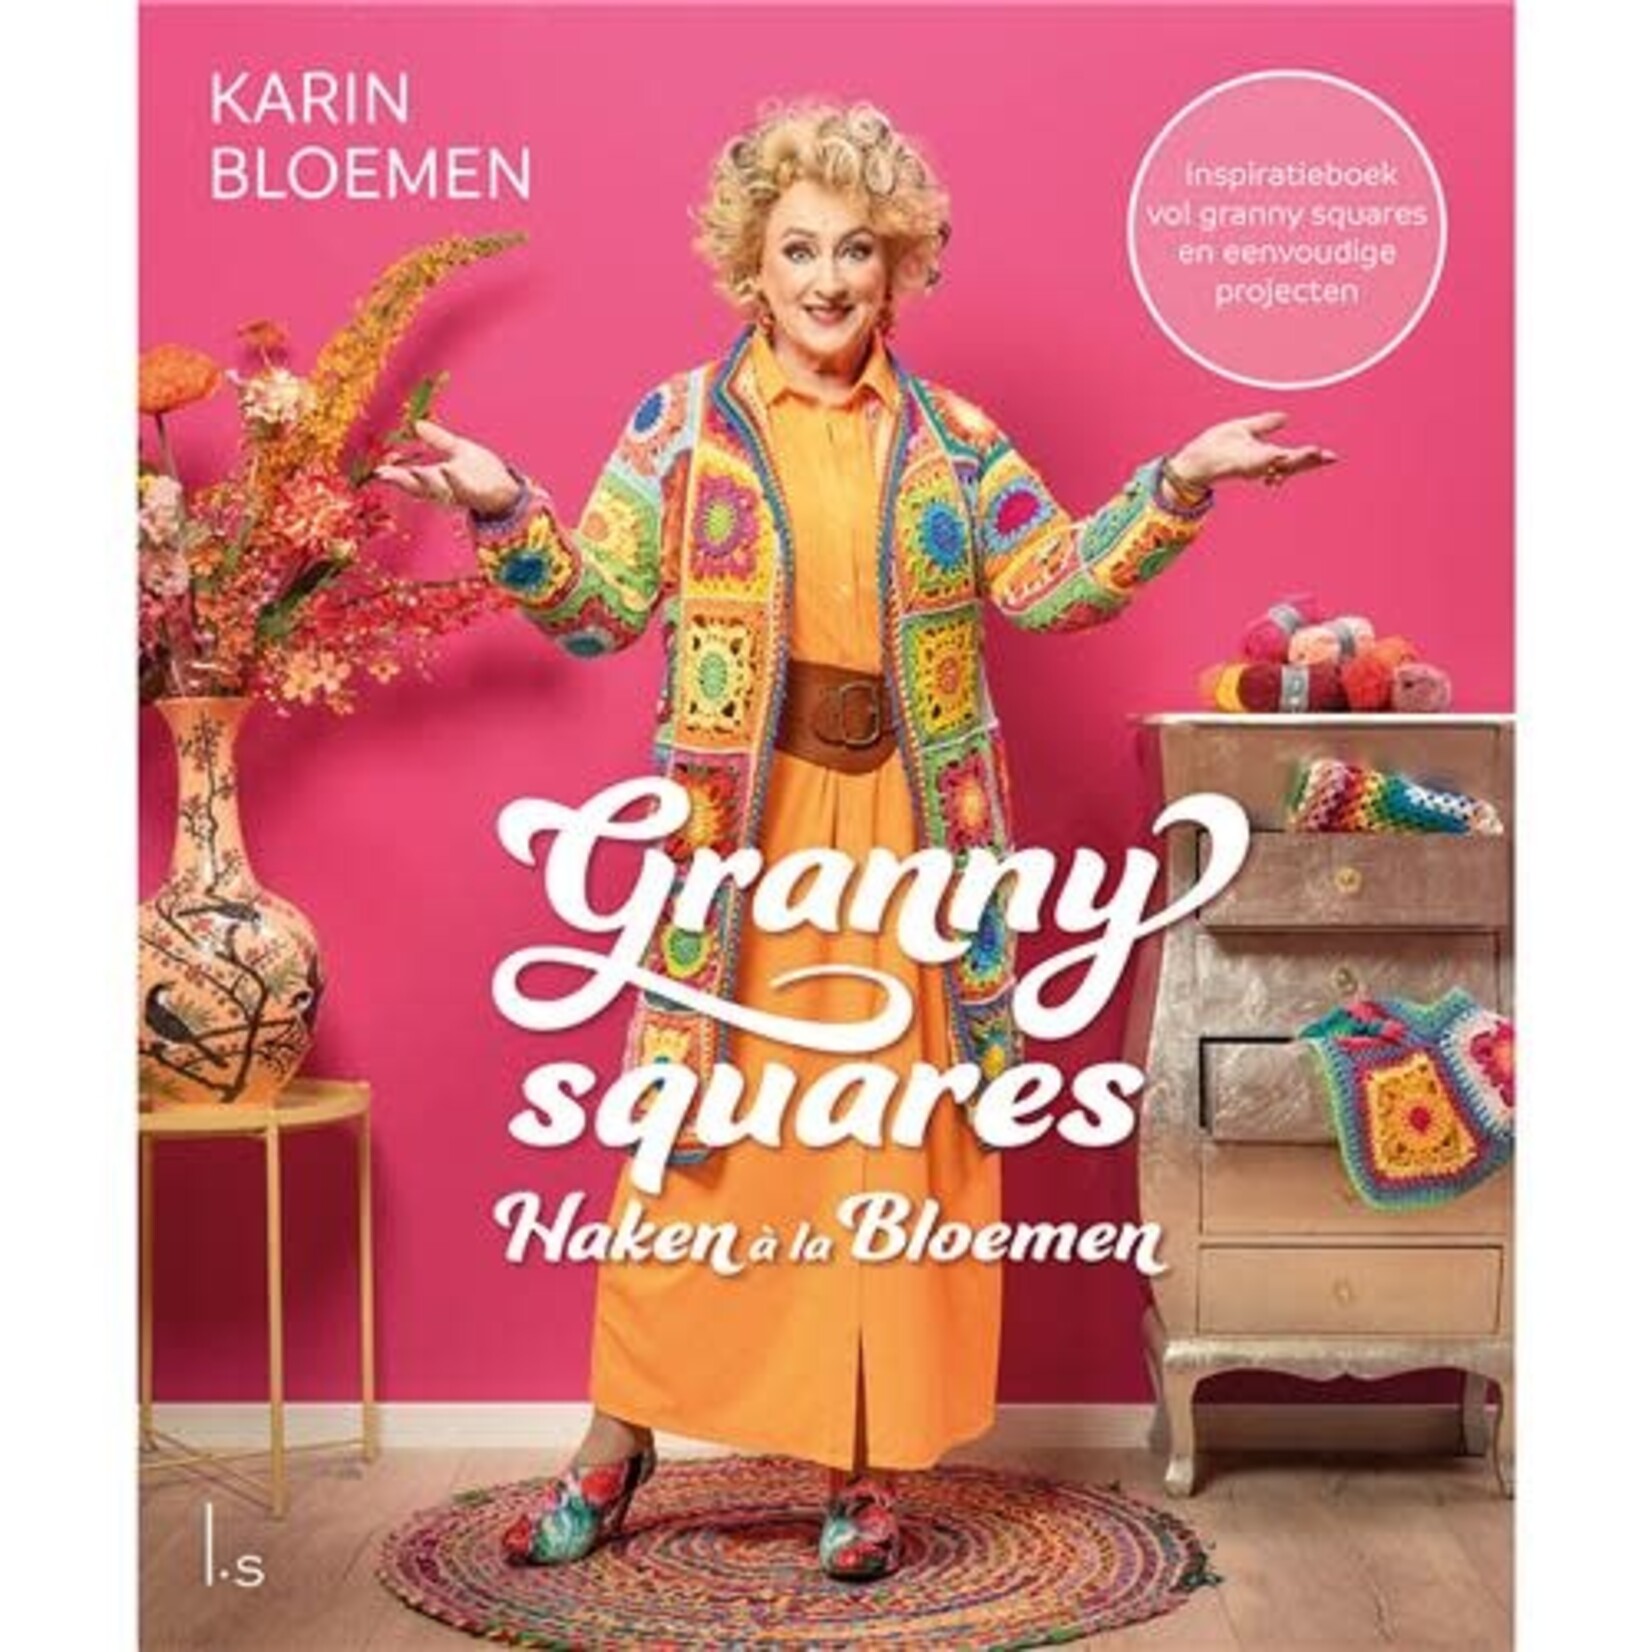 Boek Boek - Haken a la Bloemen 2 : Granny squares (karin bloemen)